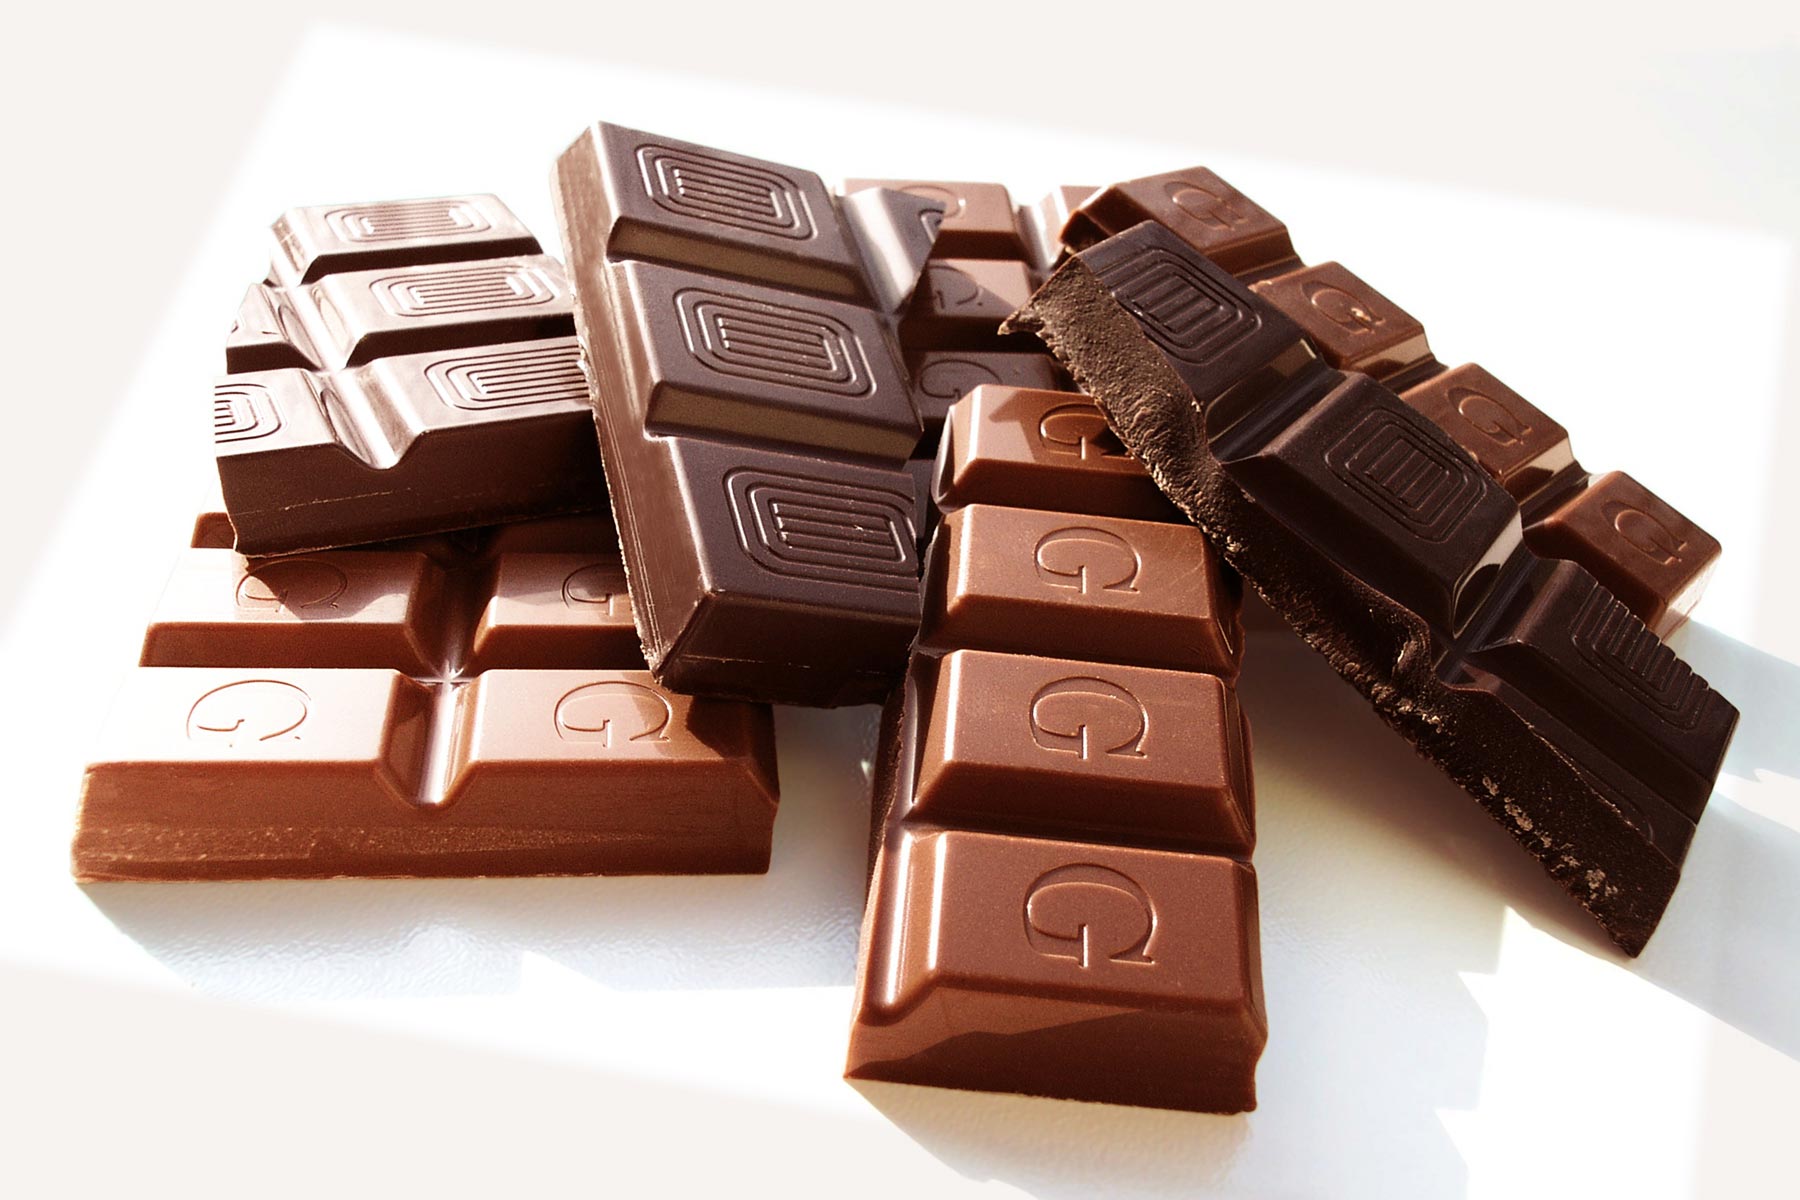 Çikolata ile ilgili yapılan web aramaları ve kısa cevapları